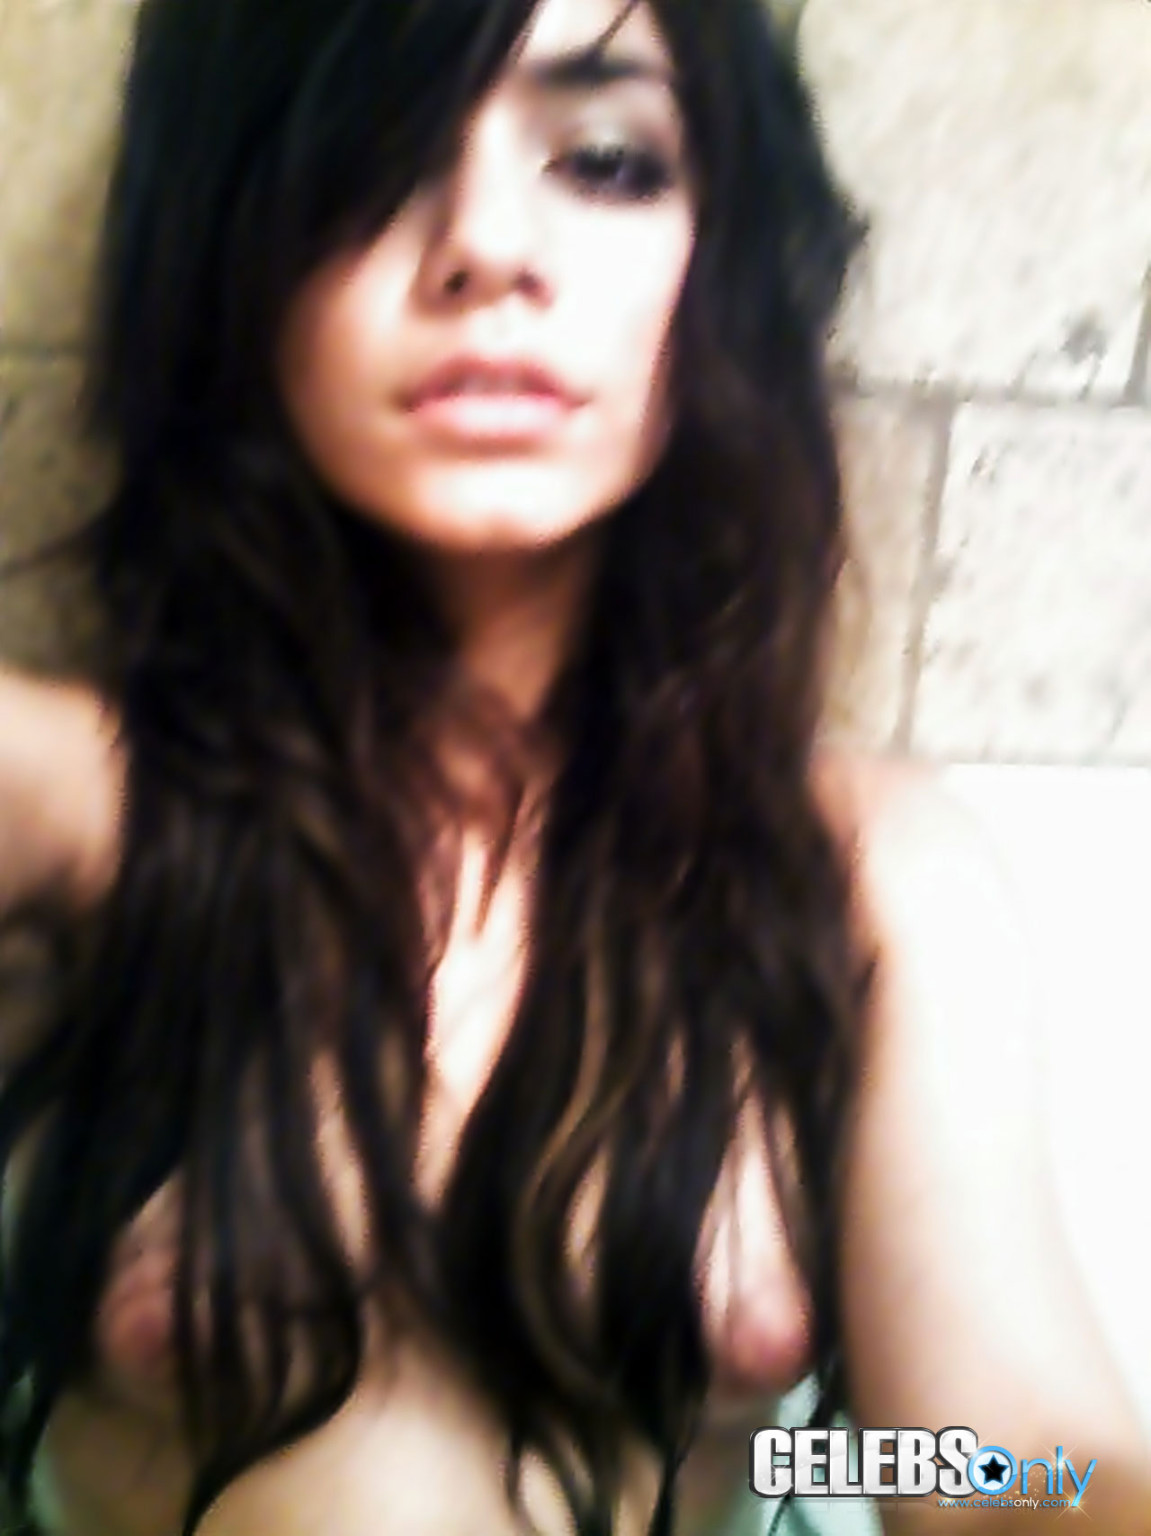 Vanessa Hudgens nude self shot pictures #75371637